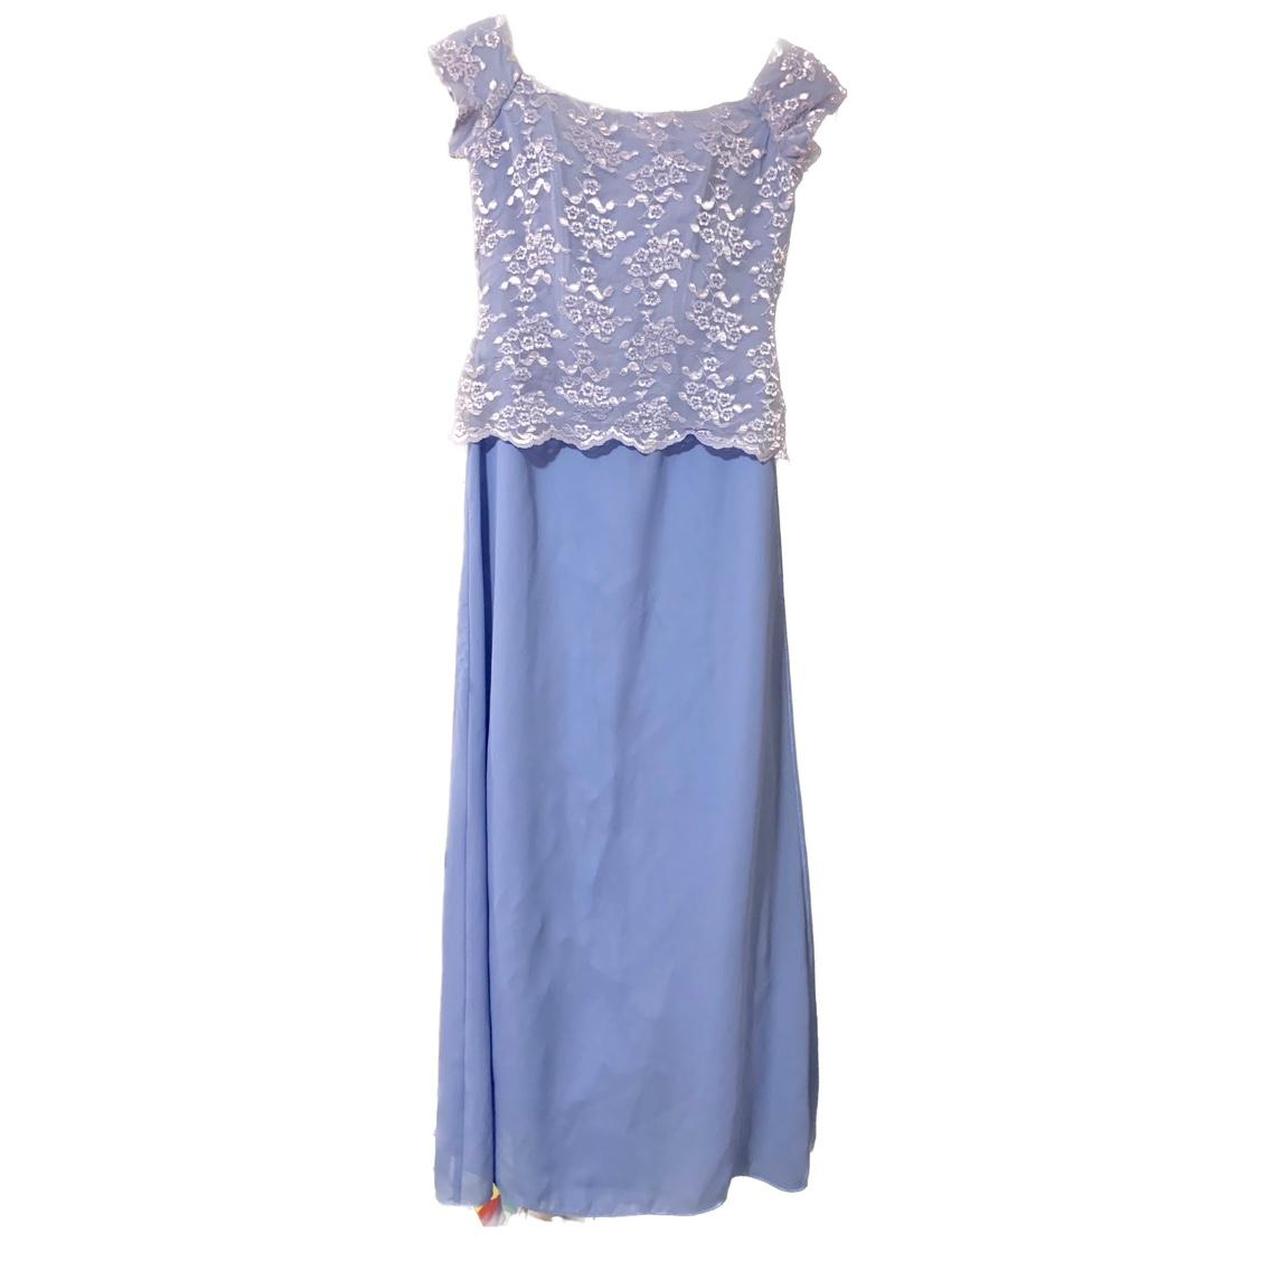 Pastel lace purple dress Size 6 would best fit a... - Depop